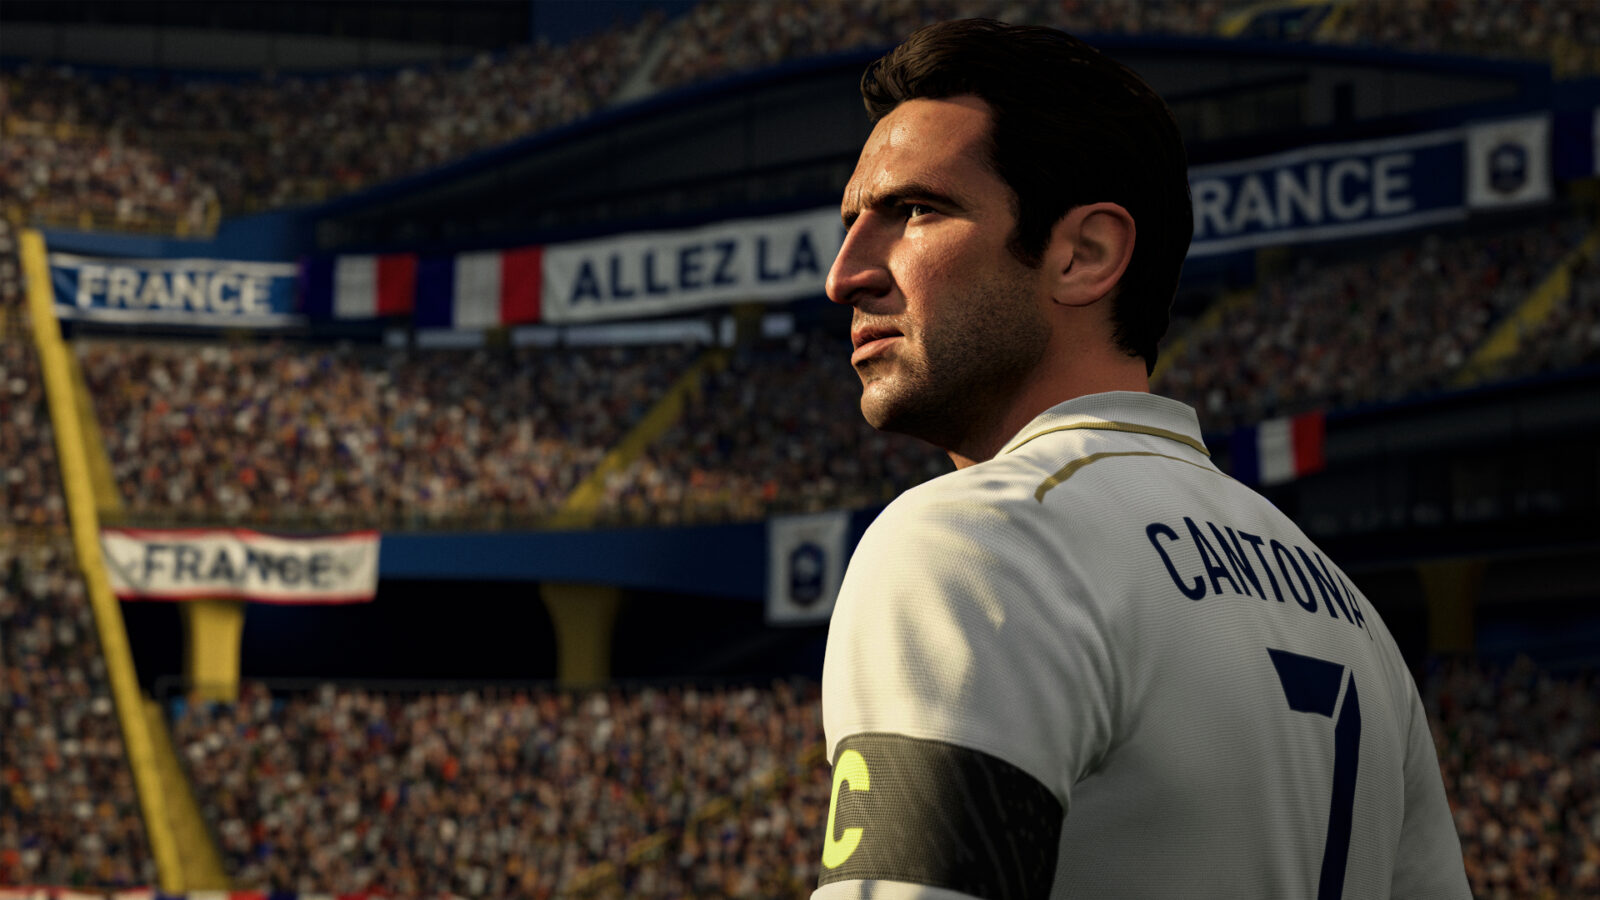 EAは、FIFA UltimateTeamの「ブラックマーケット」の申し立てを調査していることを確認しました